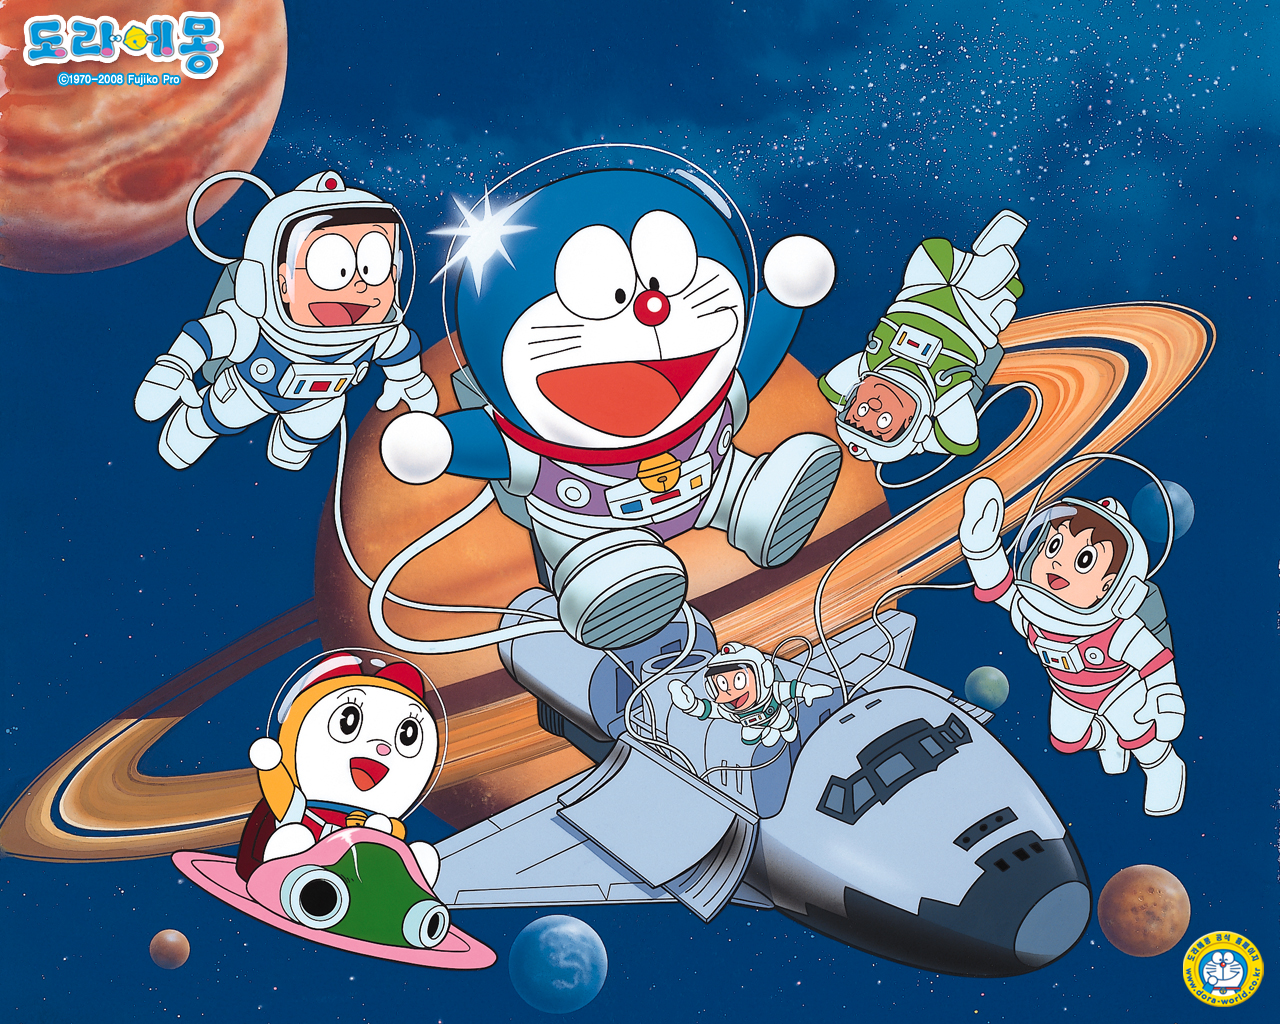 Image Abyss là một kho tàng hình ảnh phong phú và đặc sắc về Doraemon Anime. Tại đây, bạn có thể tìm thấy hàng trăm hình ảnh về Doraemon và những người bạn đáng yêu của mình, bao gồm cả những hình ảnh kỷ niệm và những phân cảnh đáng nhớ từ bộ phim hoạt hình.